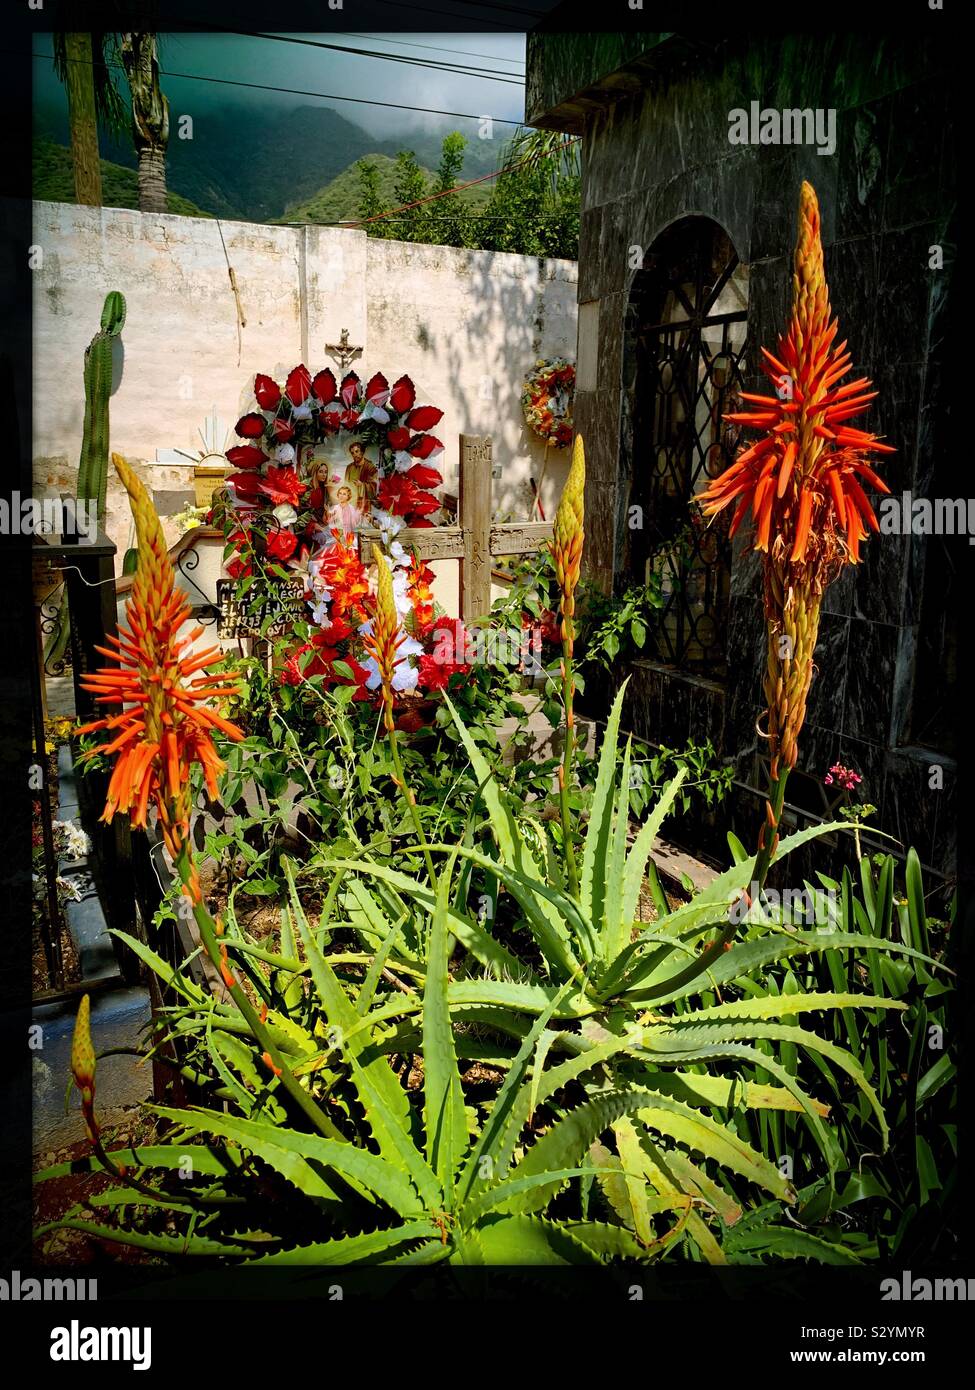 Les végétaux vivants s'épanouir sur cette grave au Mexique et un arrangement de fleurs artificielles couleur ajoute encore plus d'honorer la vie d'un être cher. Banque D'Images